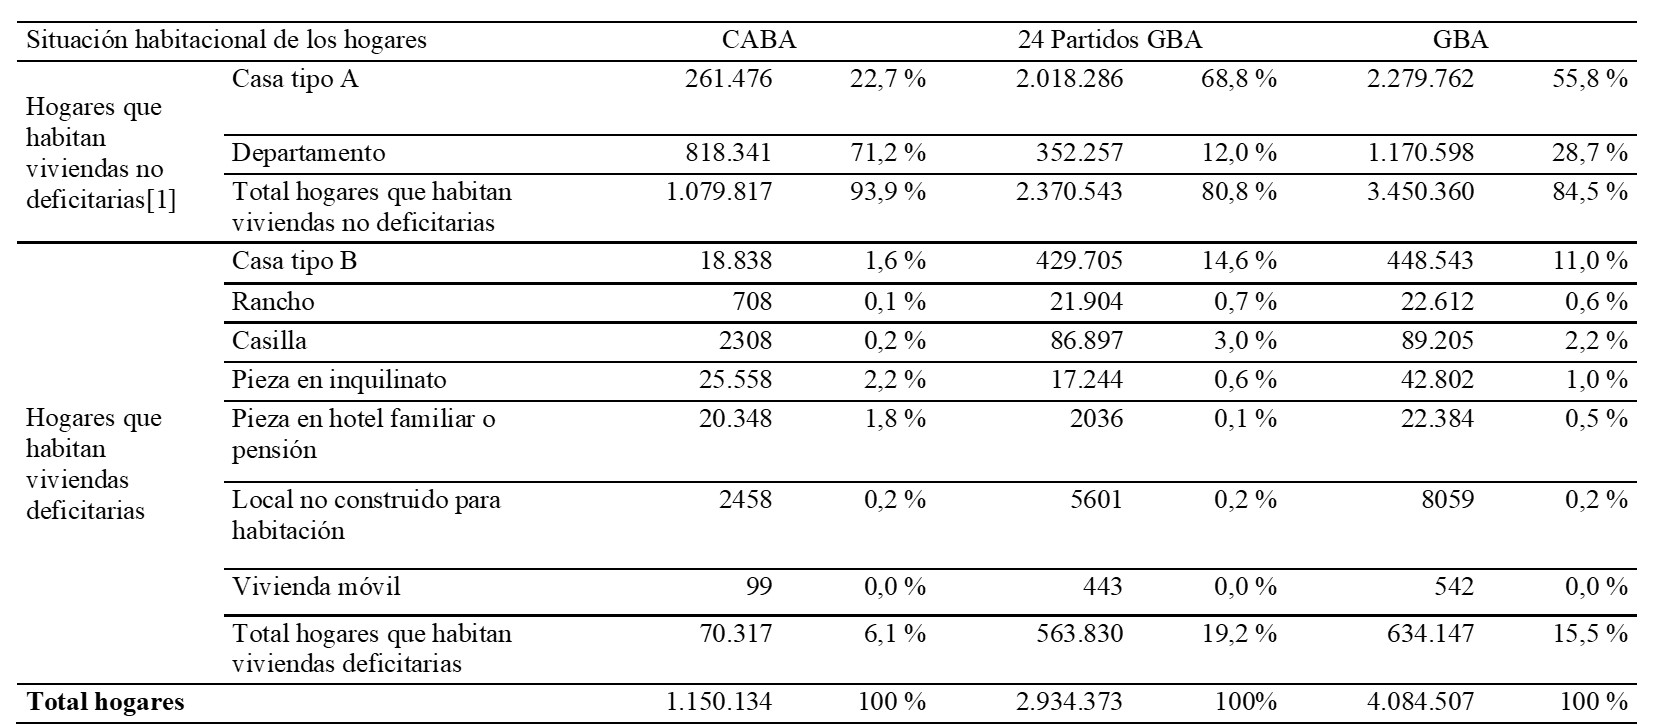 Distribución de los hogares según tipo de vivienda. Total CABA, 24 partidos del GBA, GBA, 2010